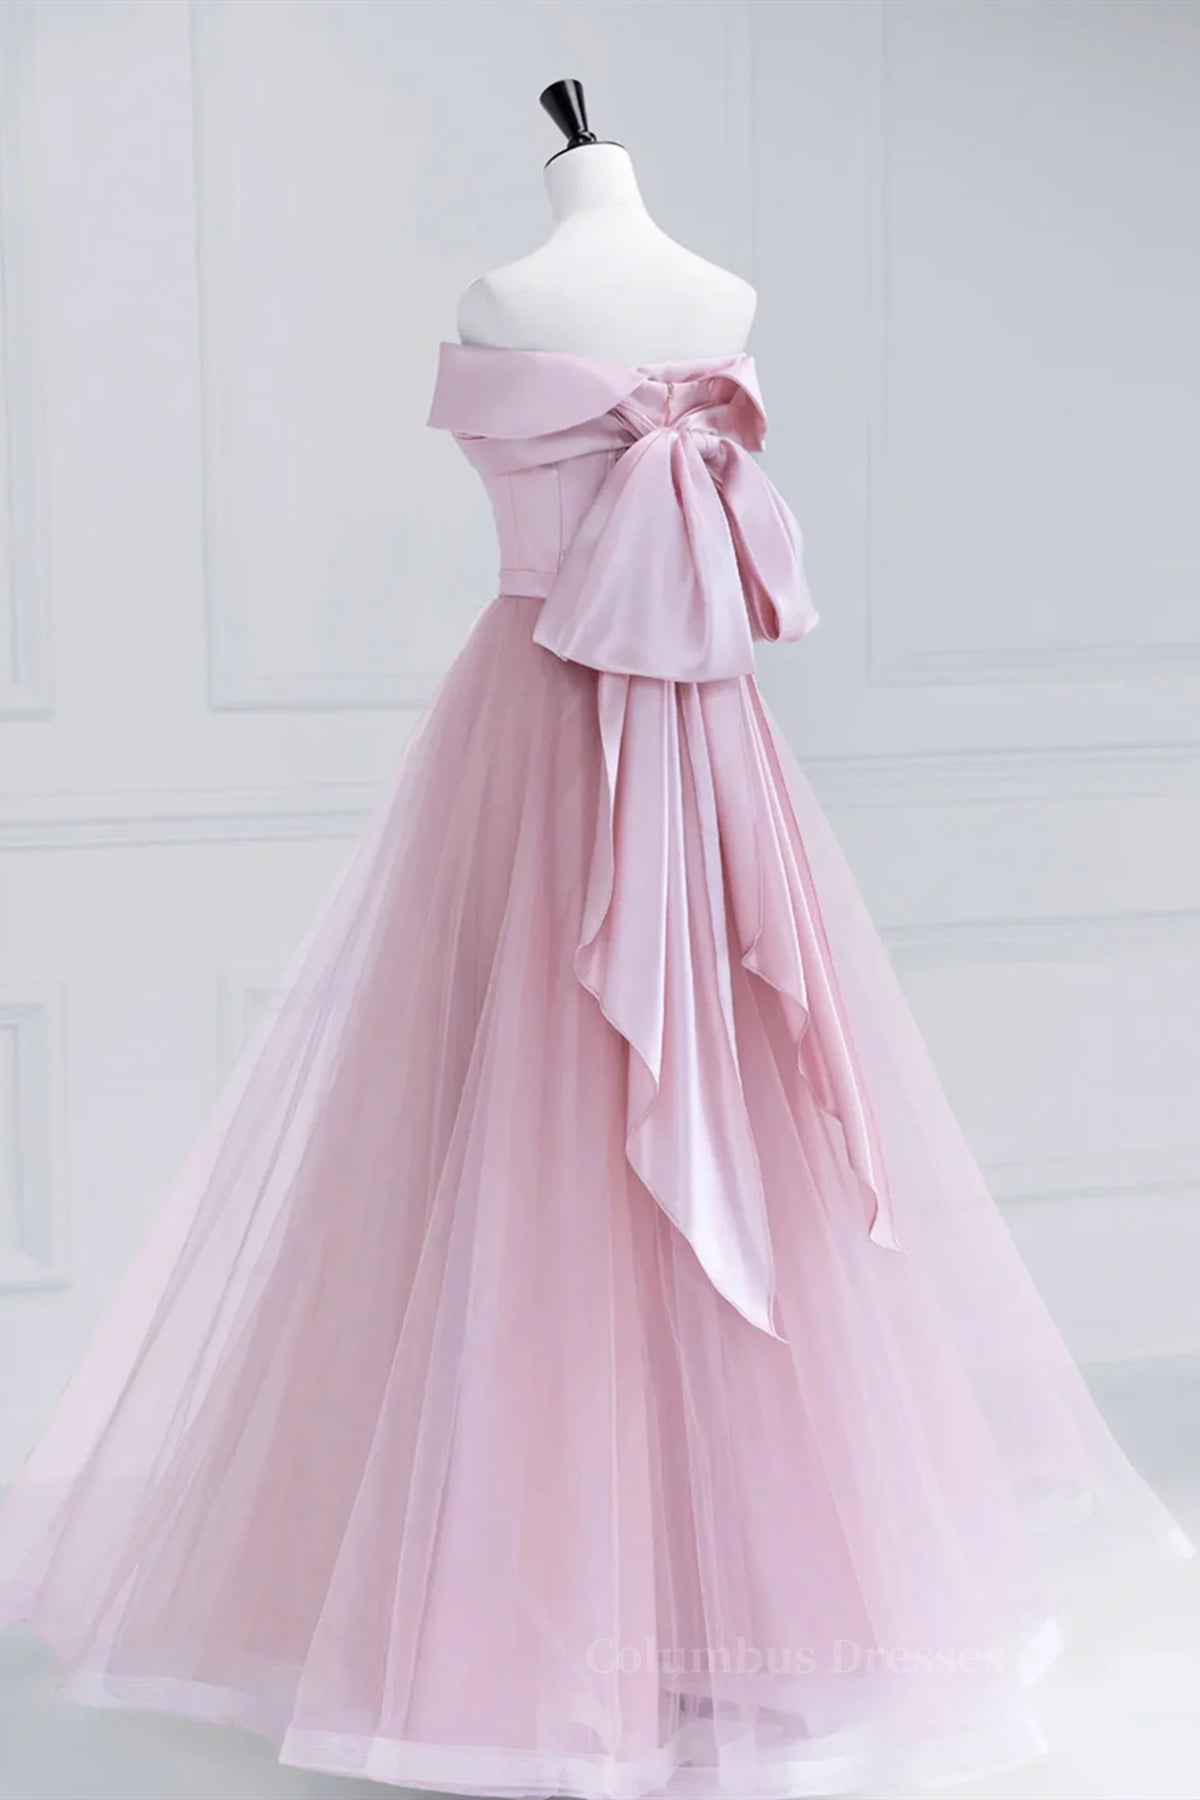 Bridesmaids Dresses Summer Wedding, Off the Shoulder Pink Prom Dresses, Pink Tulle Formal Evening Dresses